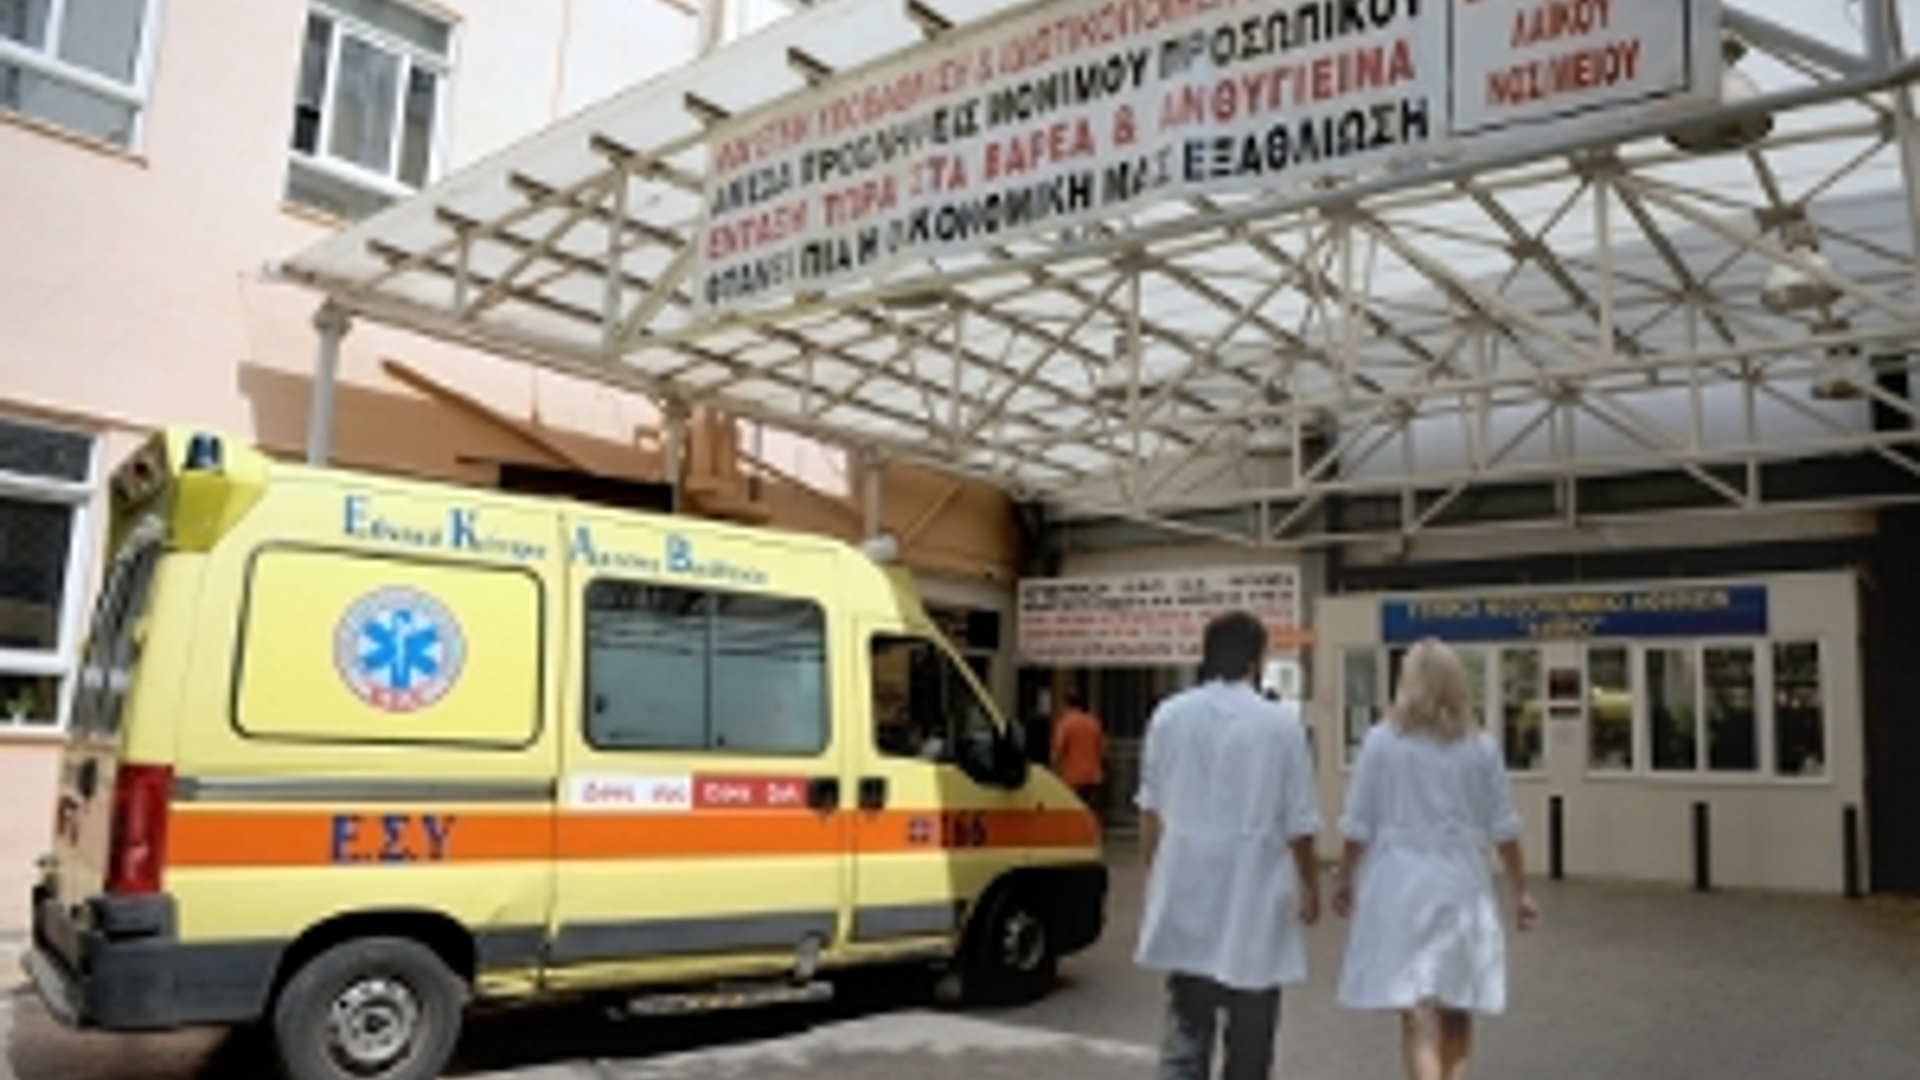 ANP-grieks_ziekenhuis_300.jpg